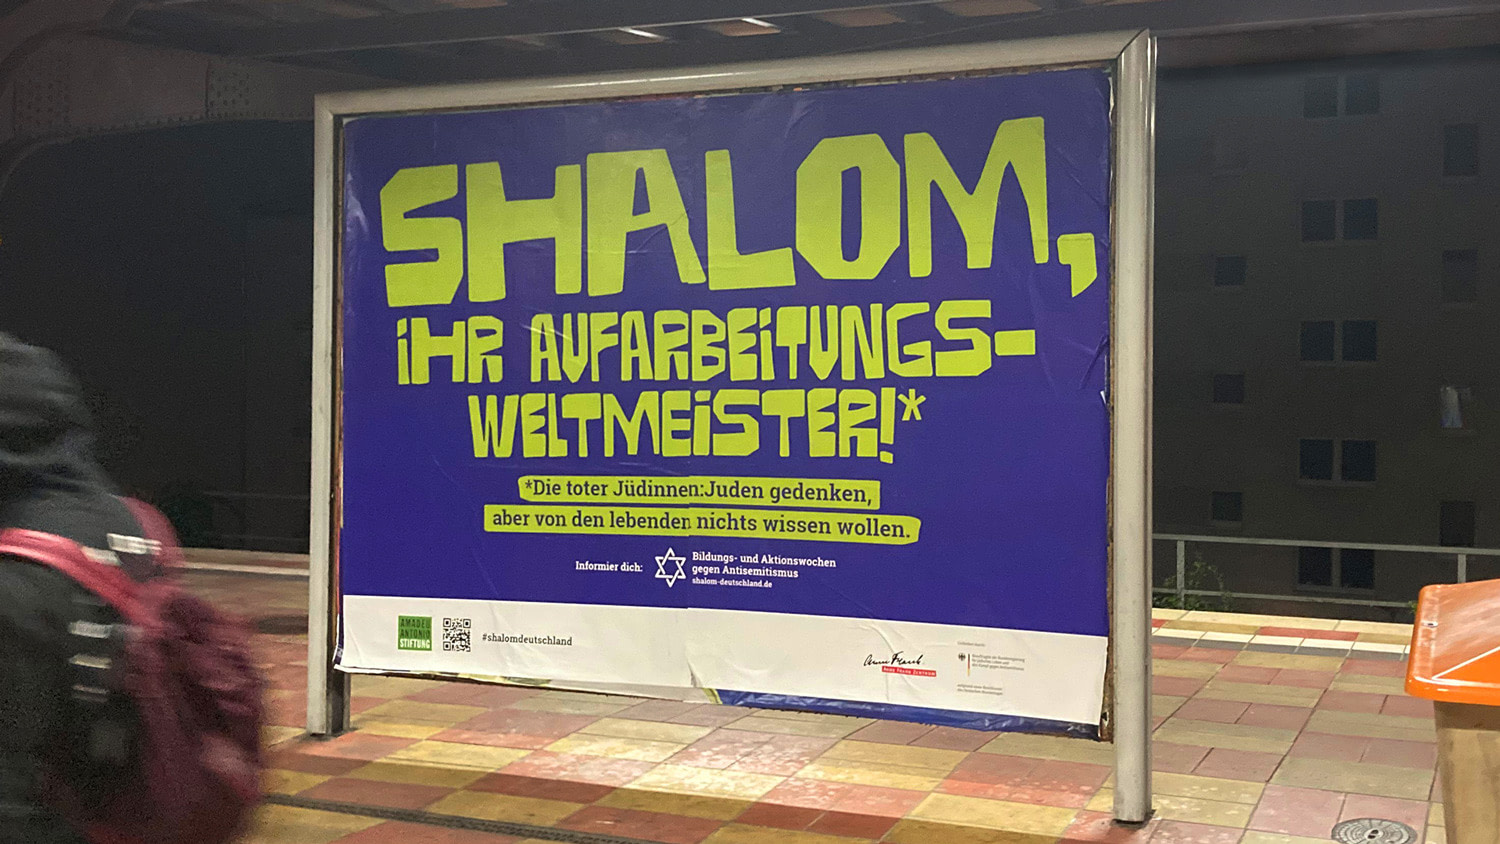 Großflächiges Plakat an einem Bahnsteig, auf lilafarbenen Hintergrund steht in giftgrün: `Shalom, ihr Aufarbeitungsweltmeister!*` und darunter: `*Die toter Jüdinnen:Juden gedenken, aber von den lebenden nichts wissen wollen.`